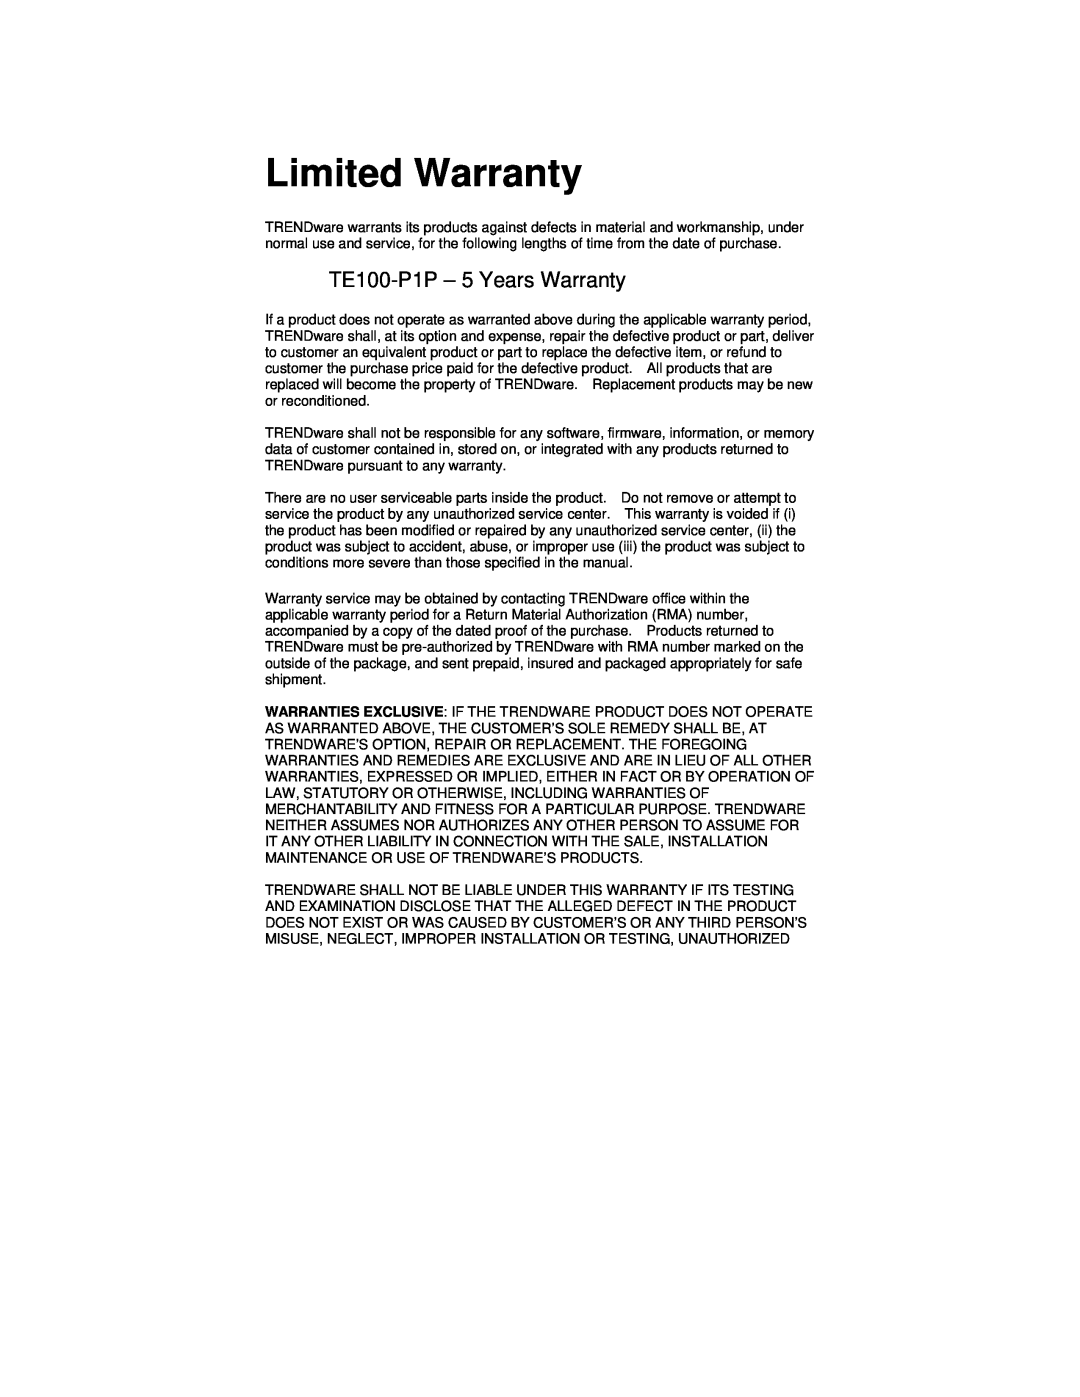 TRENDnet manual Limited Warranty, TE100-P1P - 5 Years Warranty 